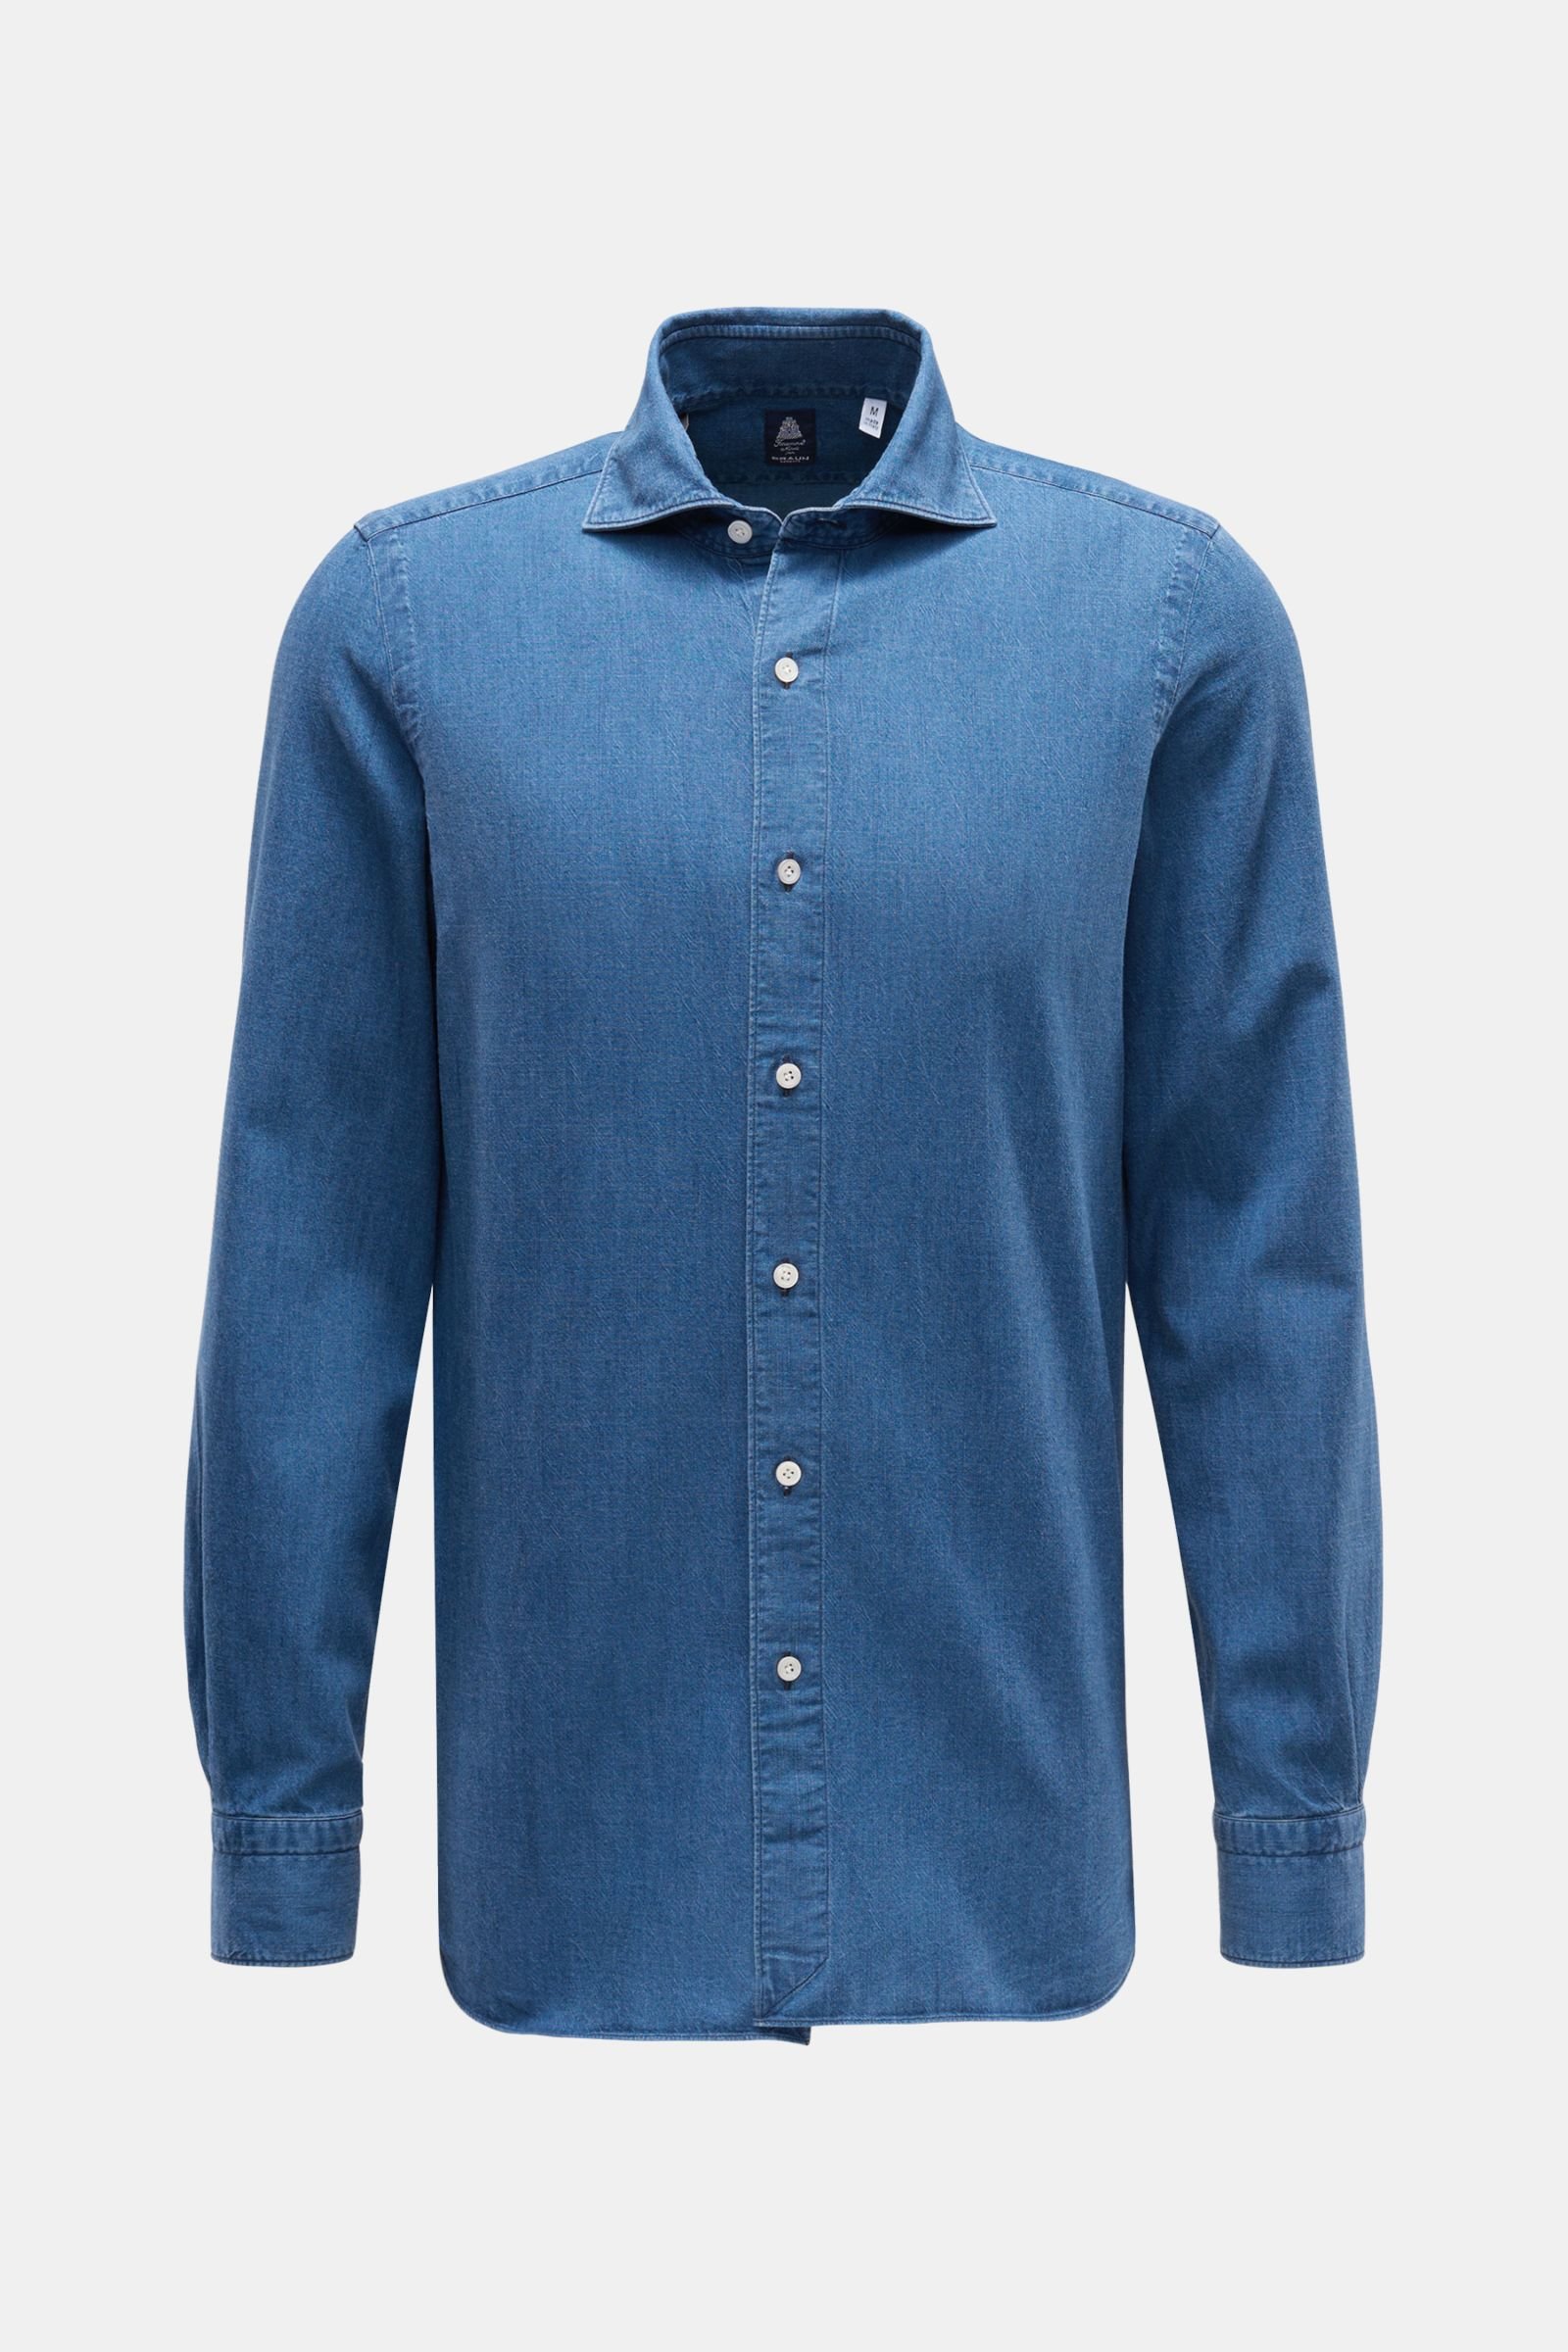 Denim shirt 'Eduardo Gaeta' shark collar blue